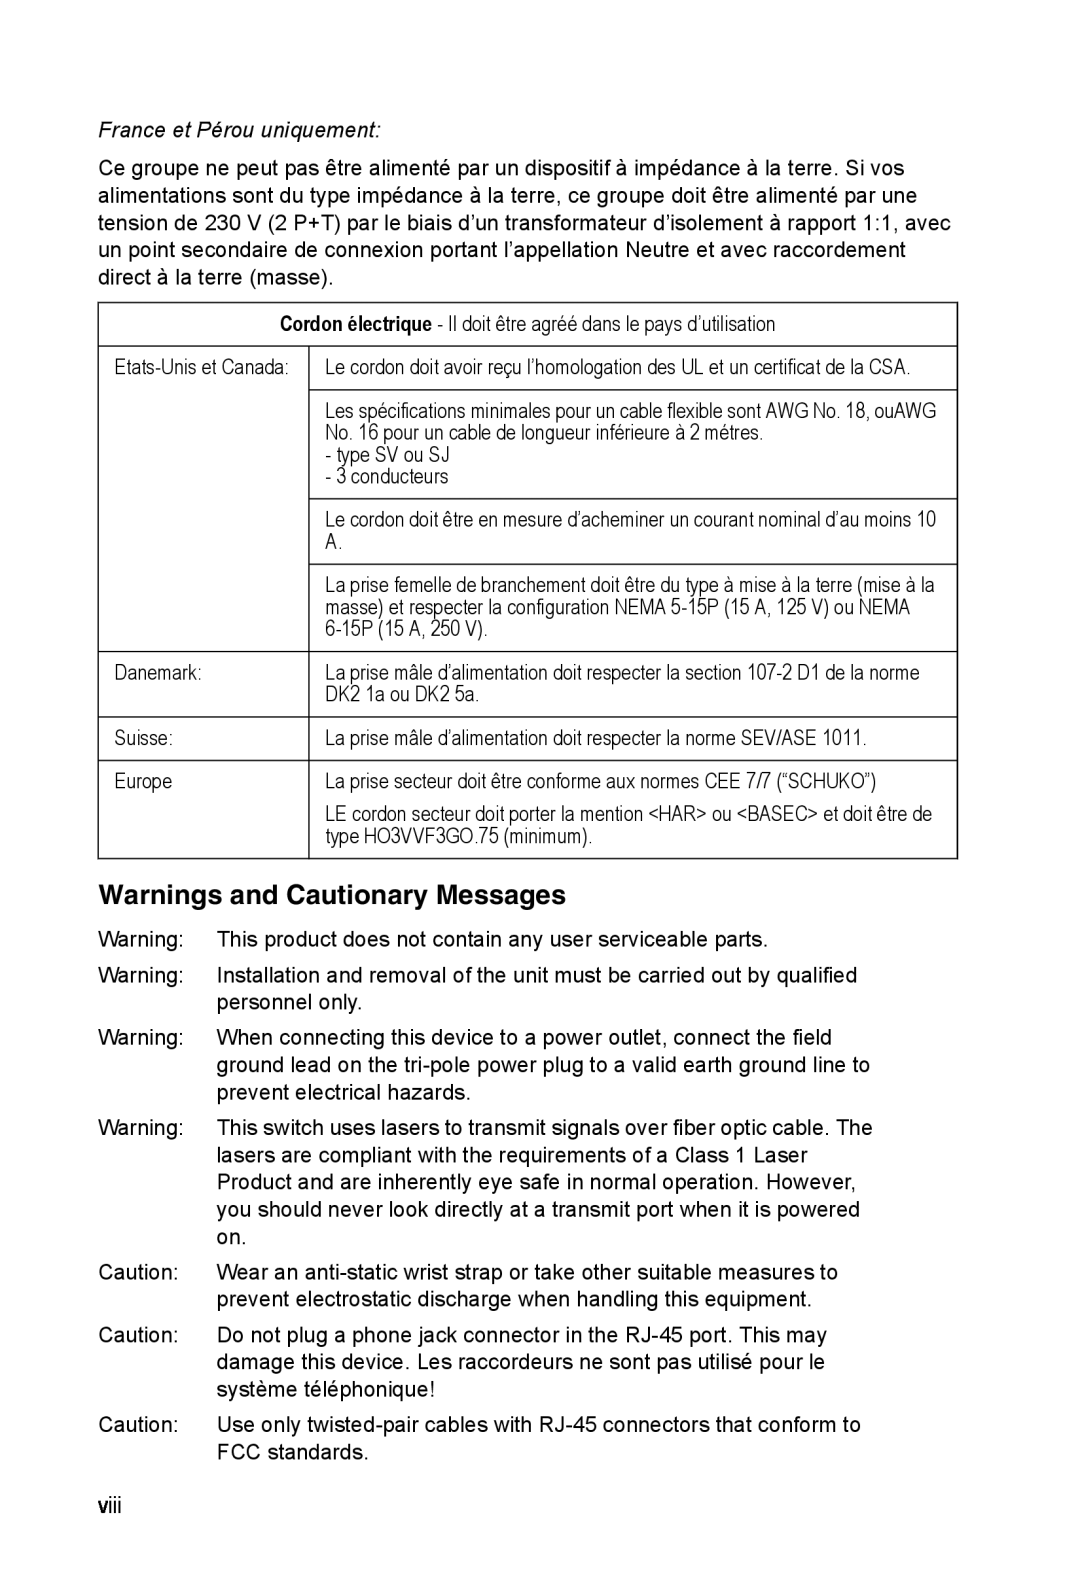 Accton Technology ES4524M-POE manual Warnings and Cautionary Messages, France et Pérou uniquement 